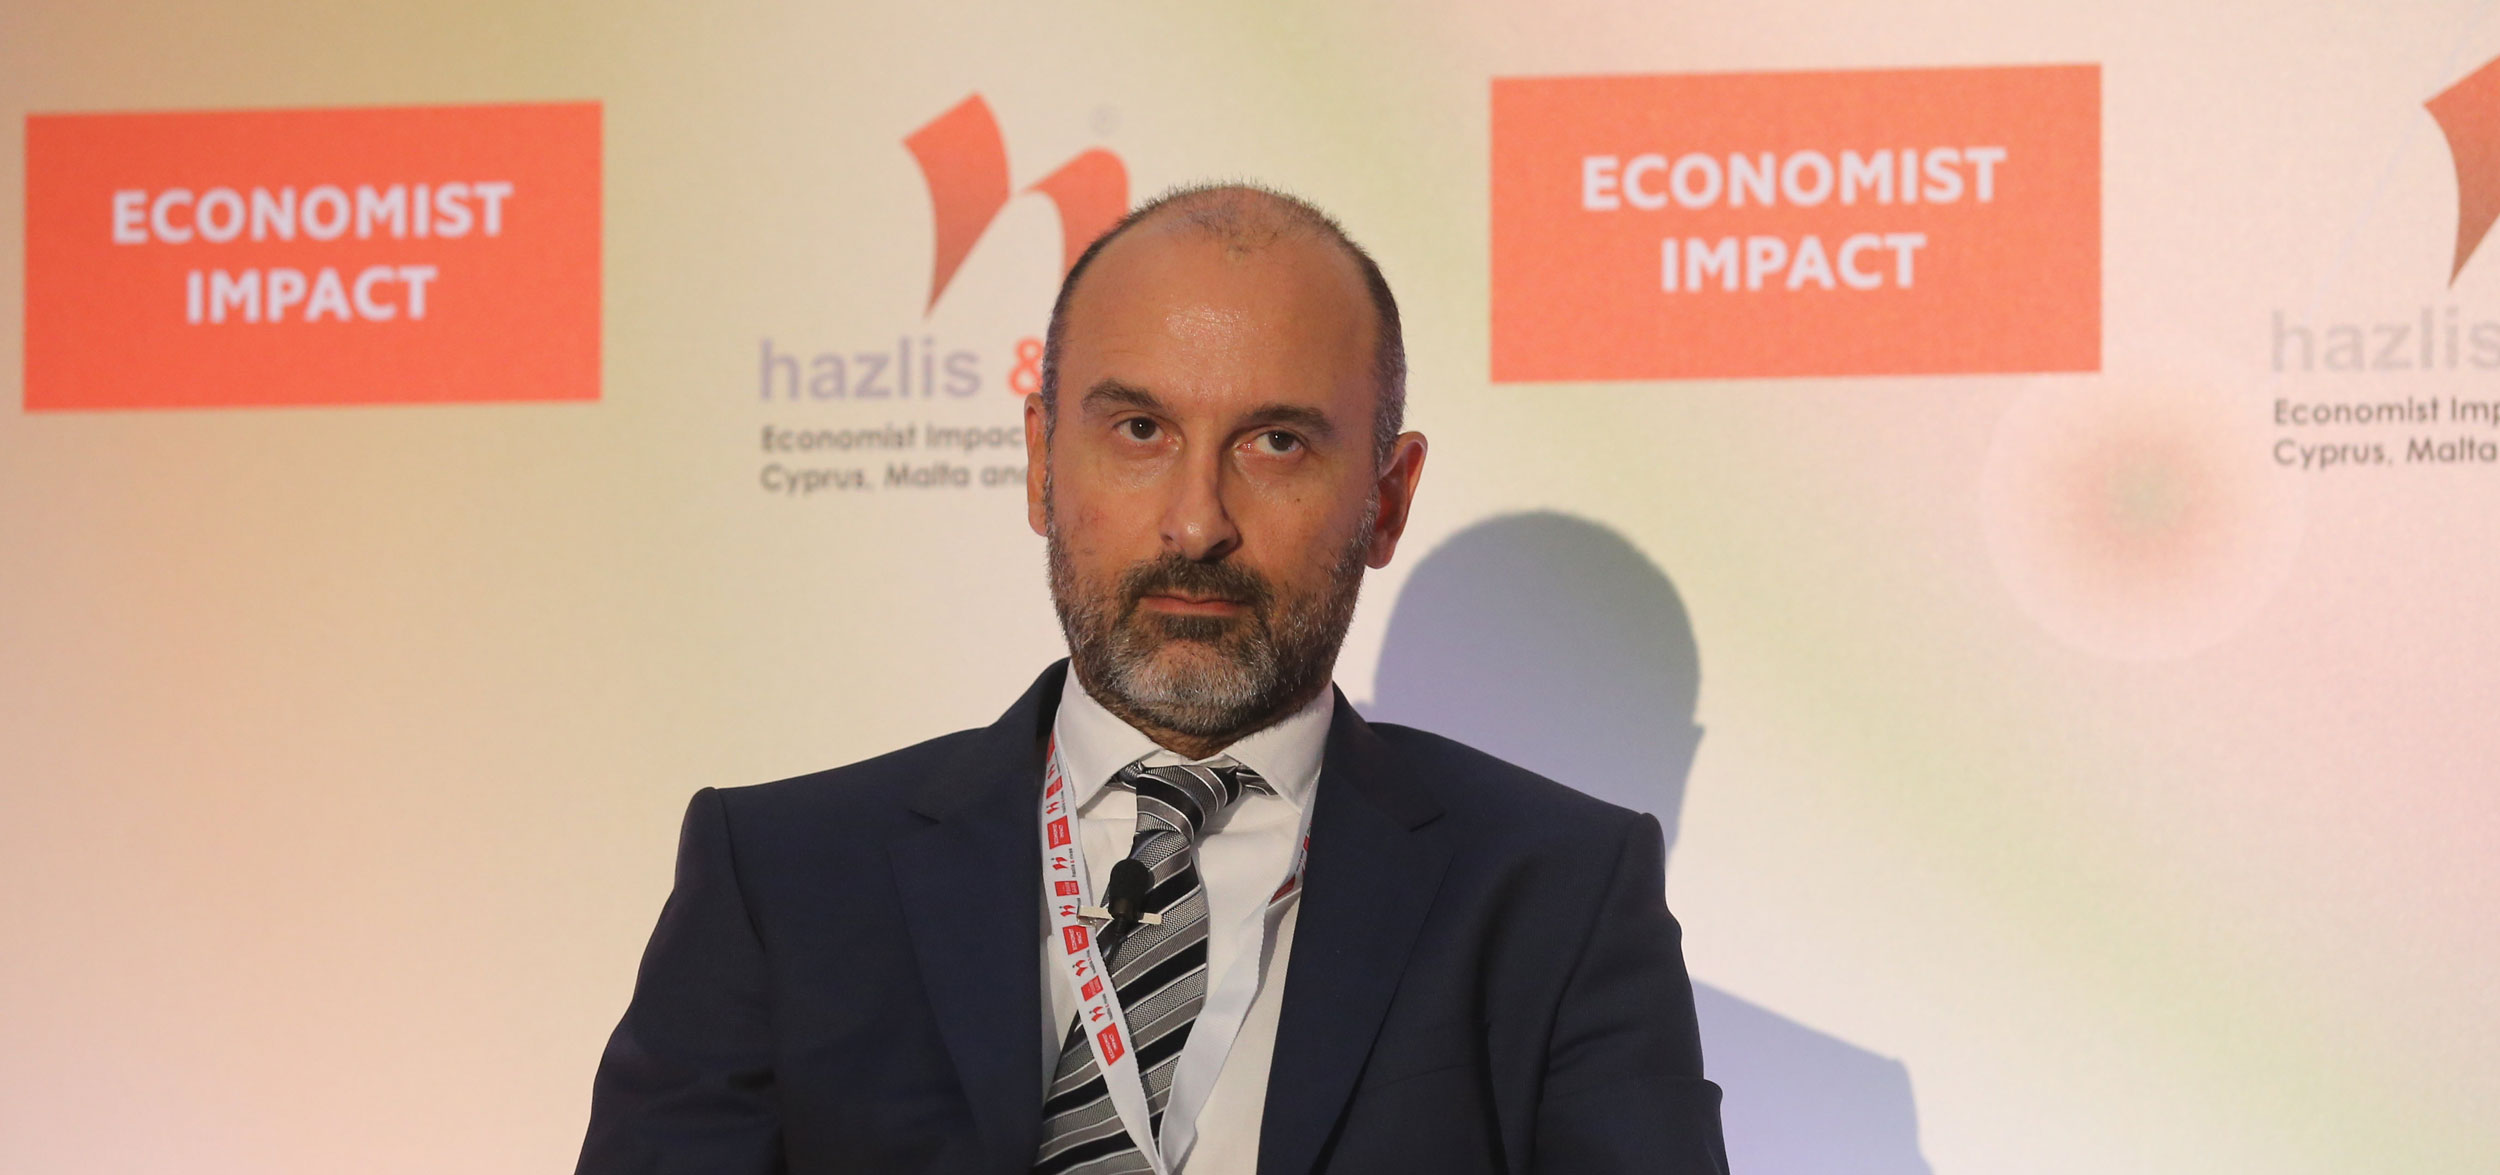 Βαγγέλης Γκορίλας, Επικεφαλής Δημόσιου Τομέα της Vodafone © The Economist Impact Events